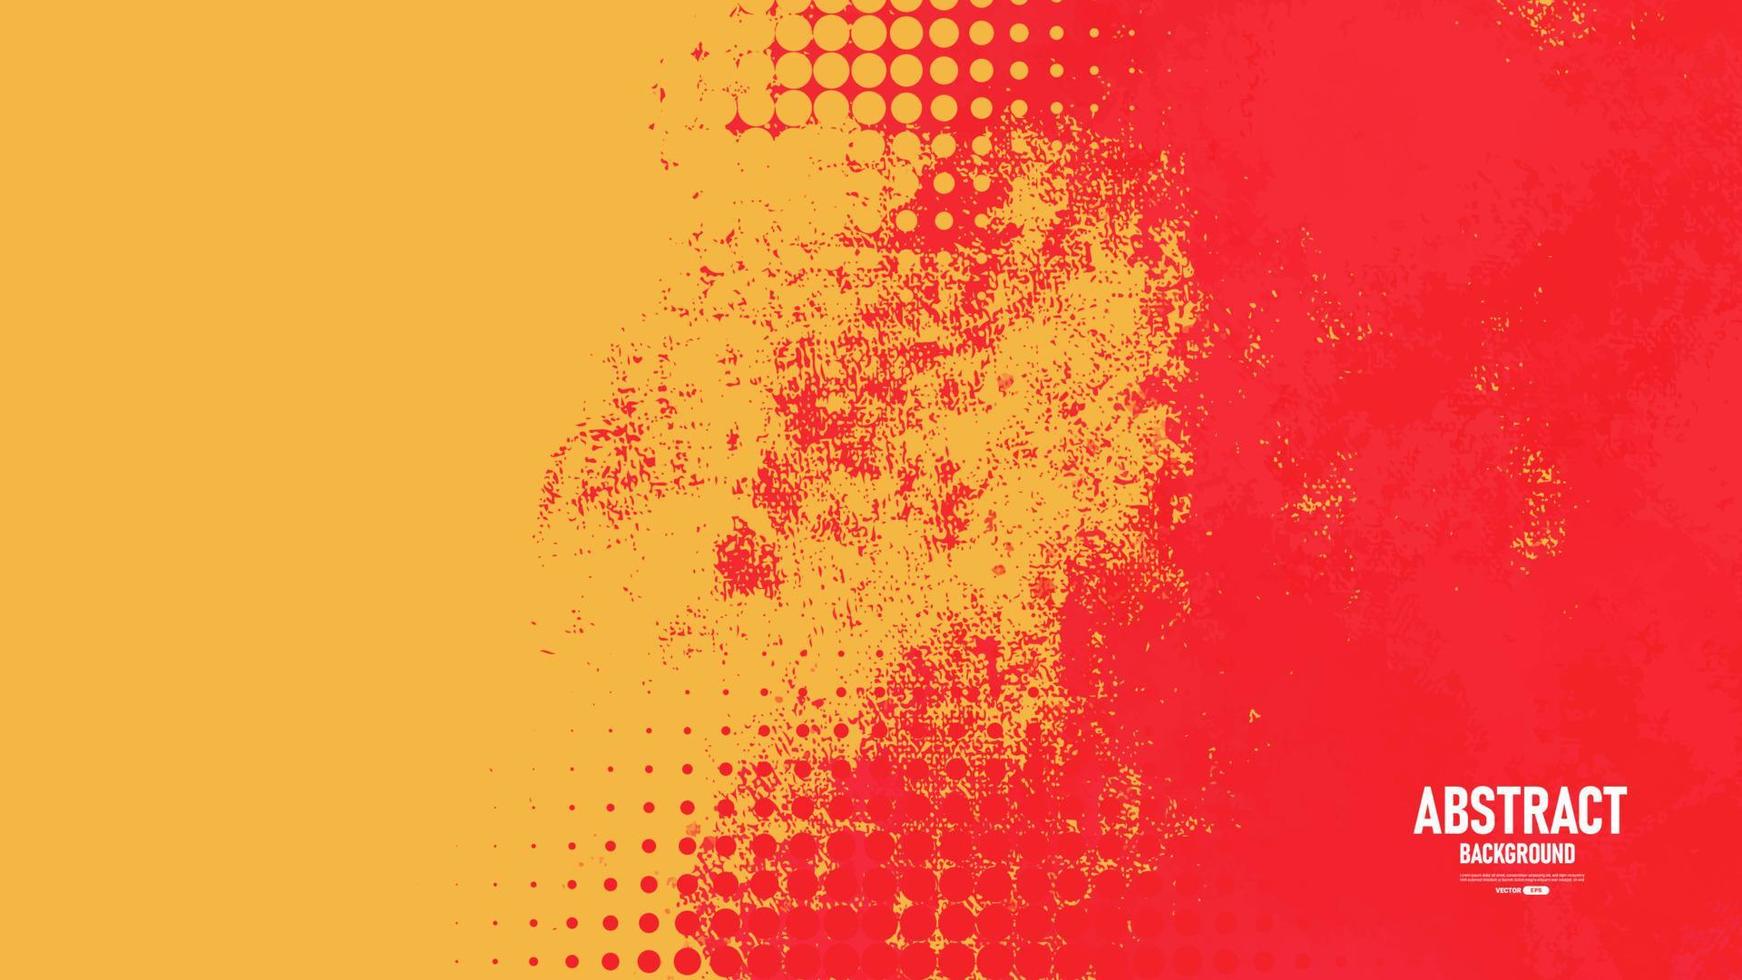 abstrakter Grunge-Hintergrund mit Halbton-Stil. vektor